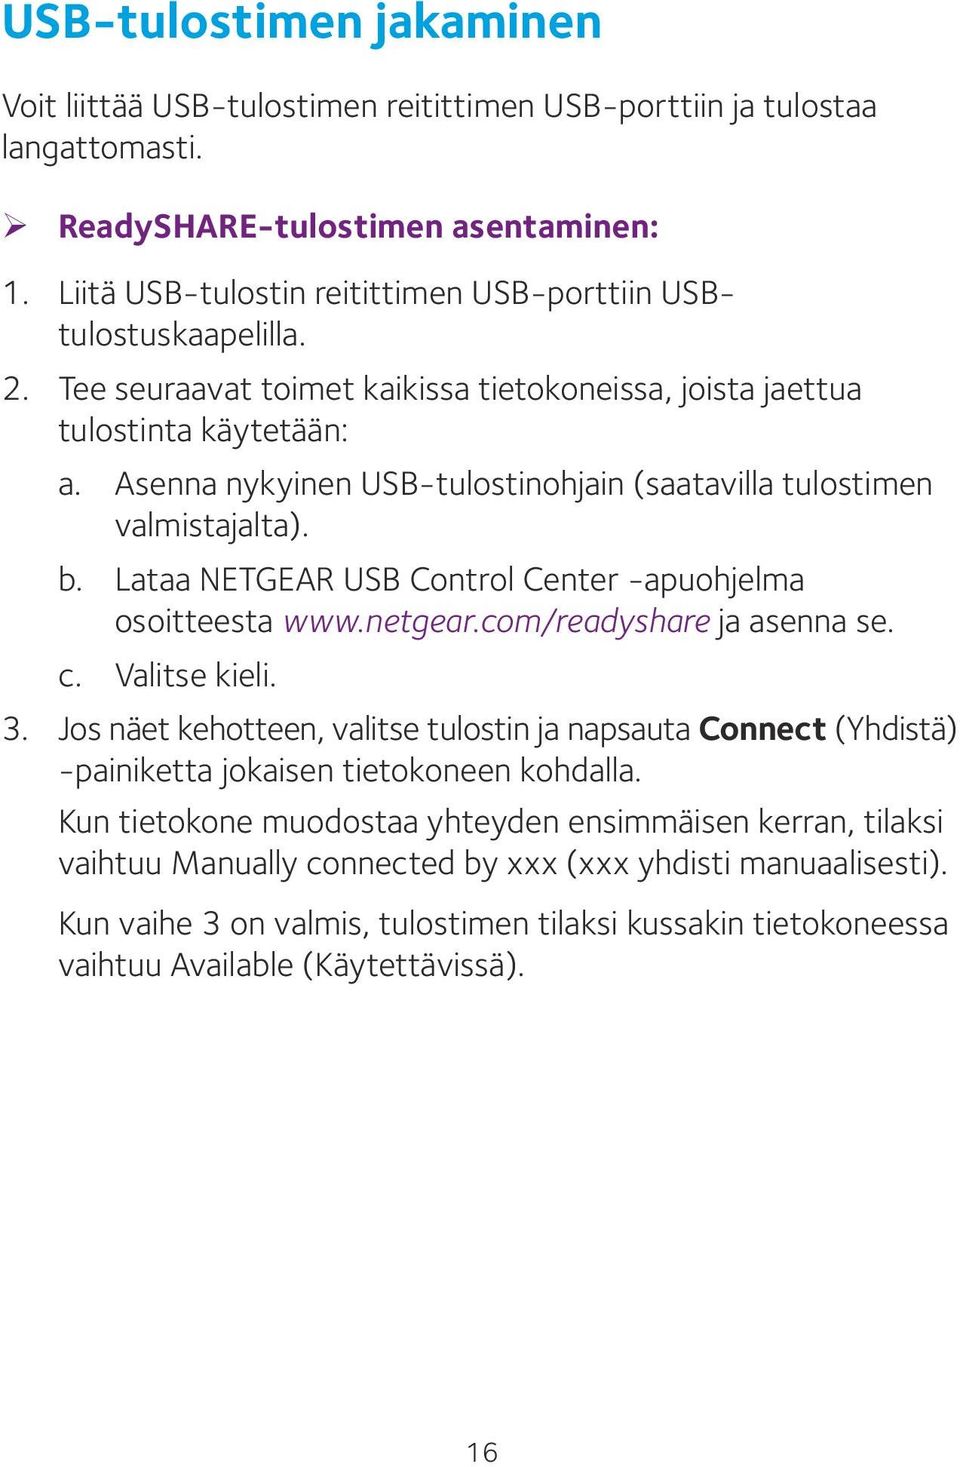 Asenna nykyinen USB-tulostinohjain (saatavilla tulostimen valmistajalta). b. Lataa NETGEAR USB Control Center -apuohjelma osoitteesta www.netgear.com/readyshare ja asenna se. c. Valitse kieli. 3.